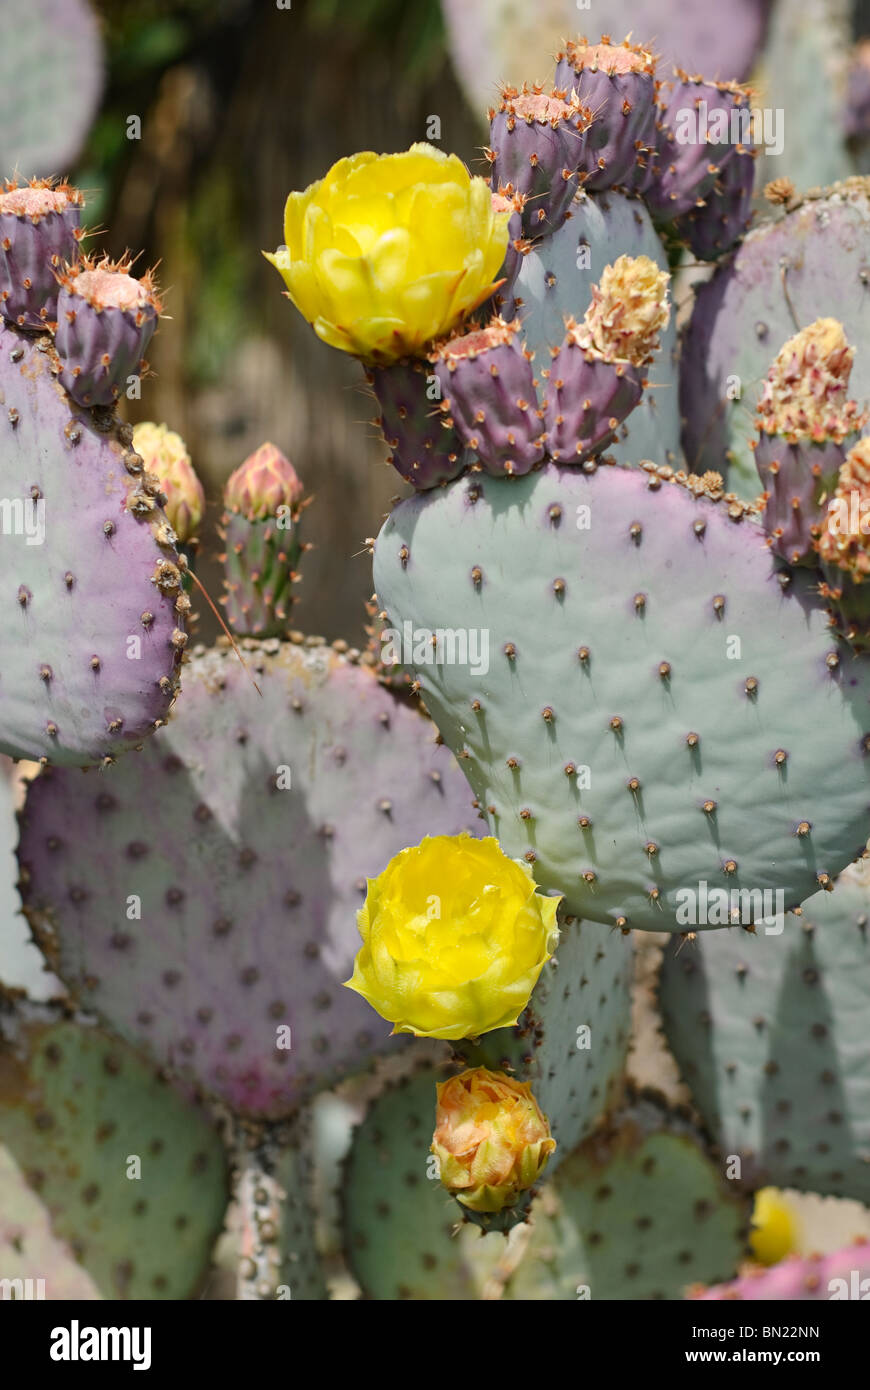 Opuntia gosseliniana, conocida comúnmente como la violeta del nopal, es una especie de cactus que es nativa de Arizona y México. Foto de stock